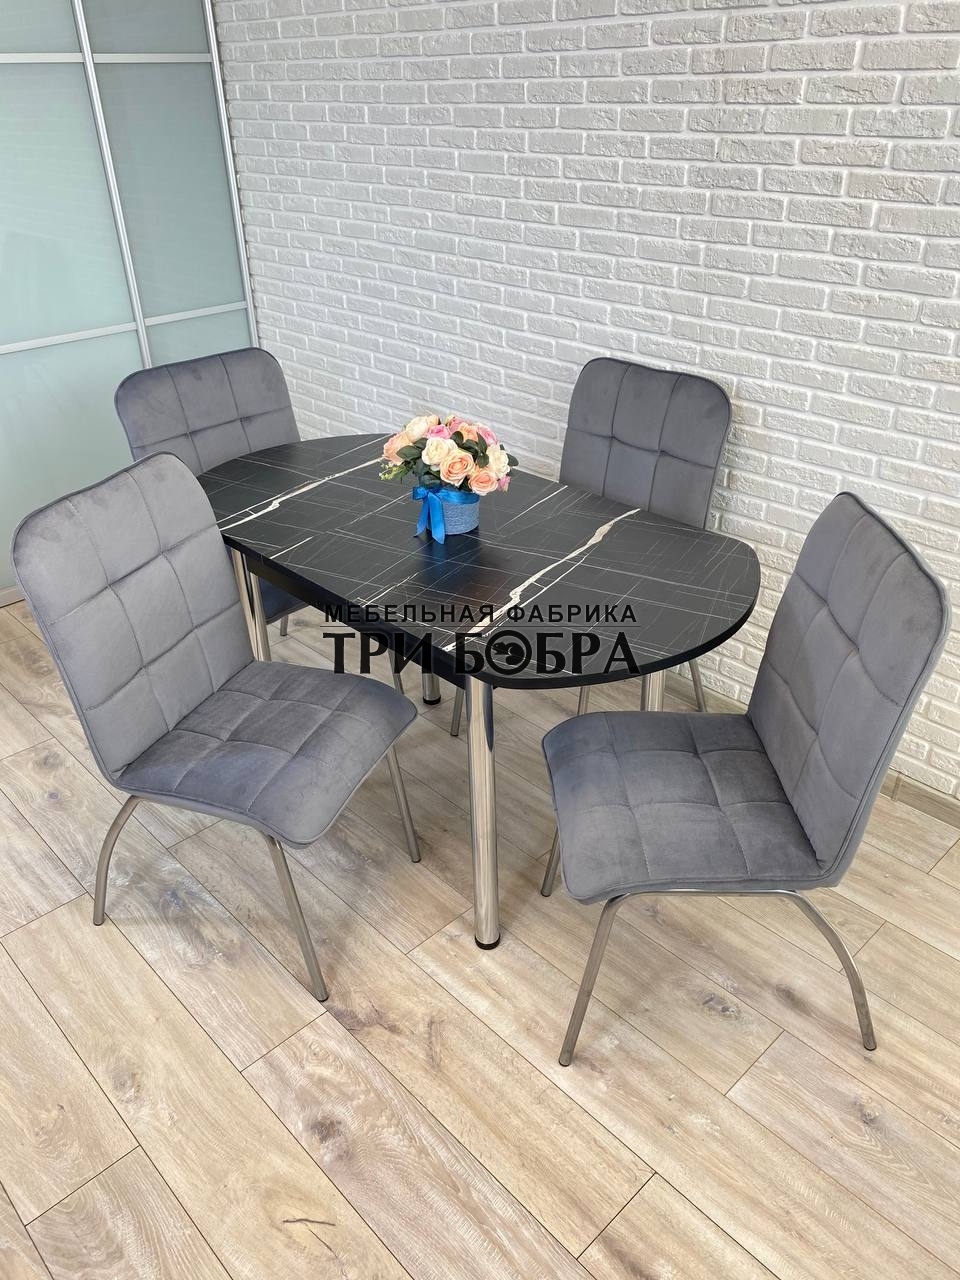 Три бобра столы и стулья